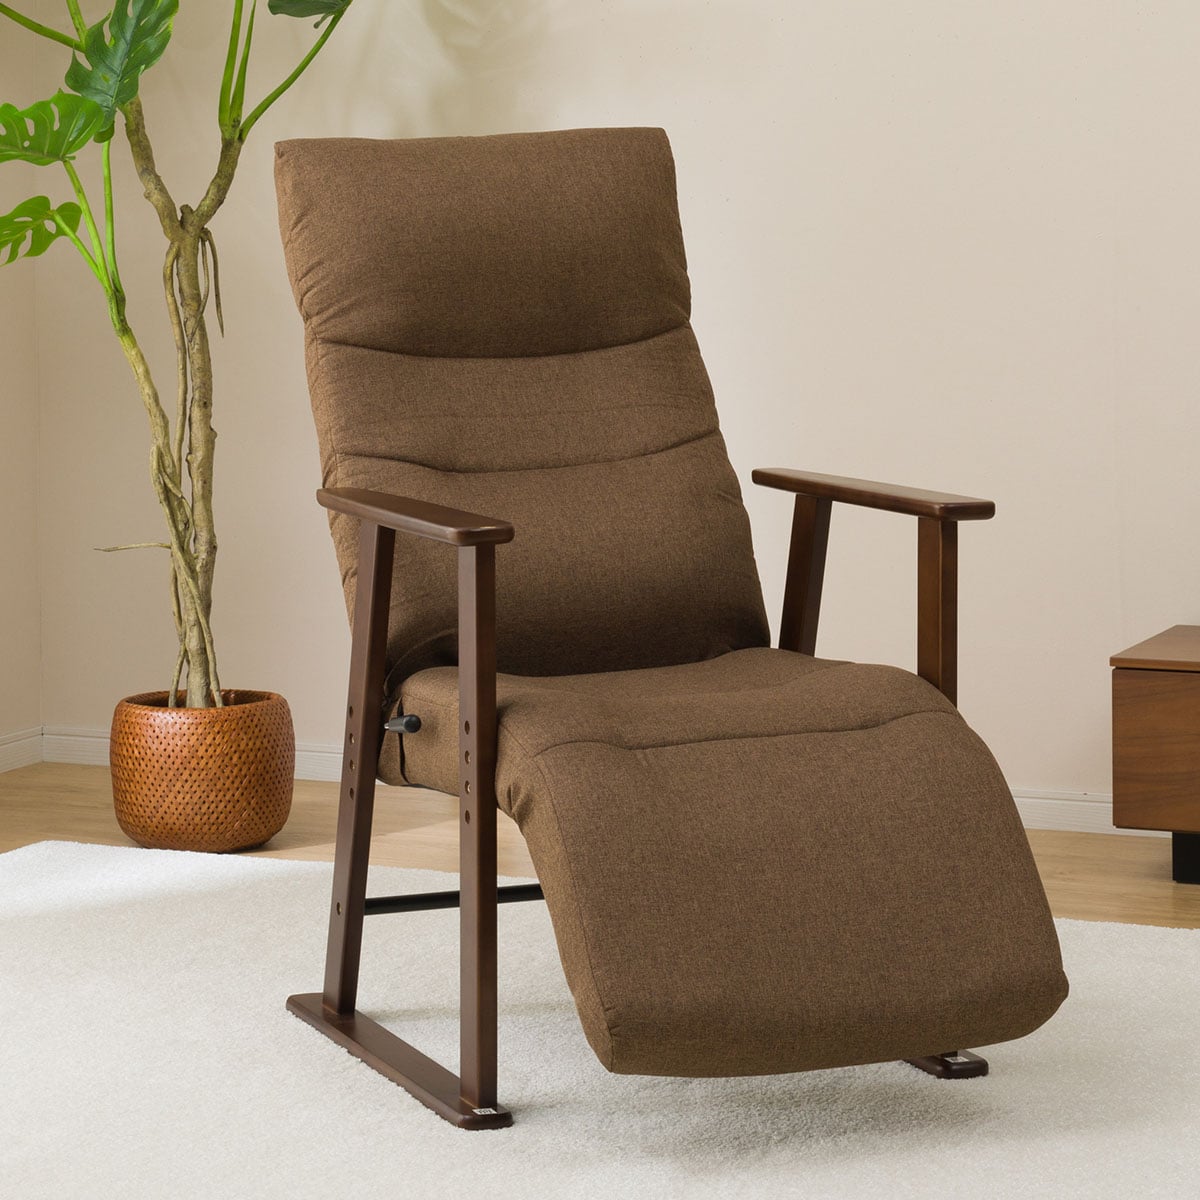 ニトリの[幅61cm] 3段調整高座椅子(JC-E01)   【1年保証】(チェア・椅子)